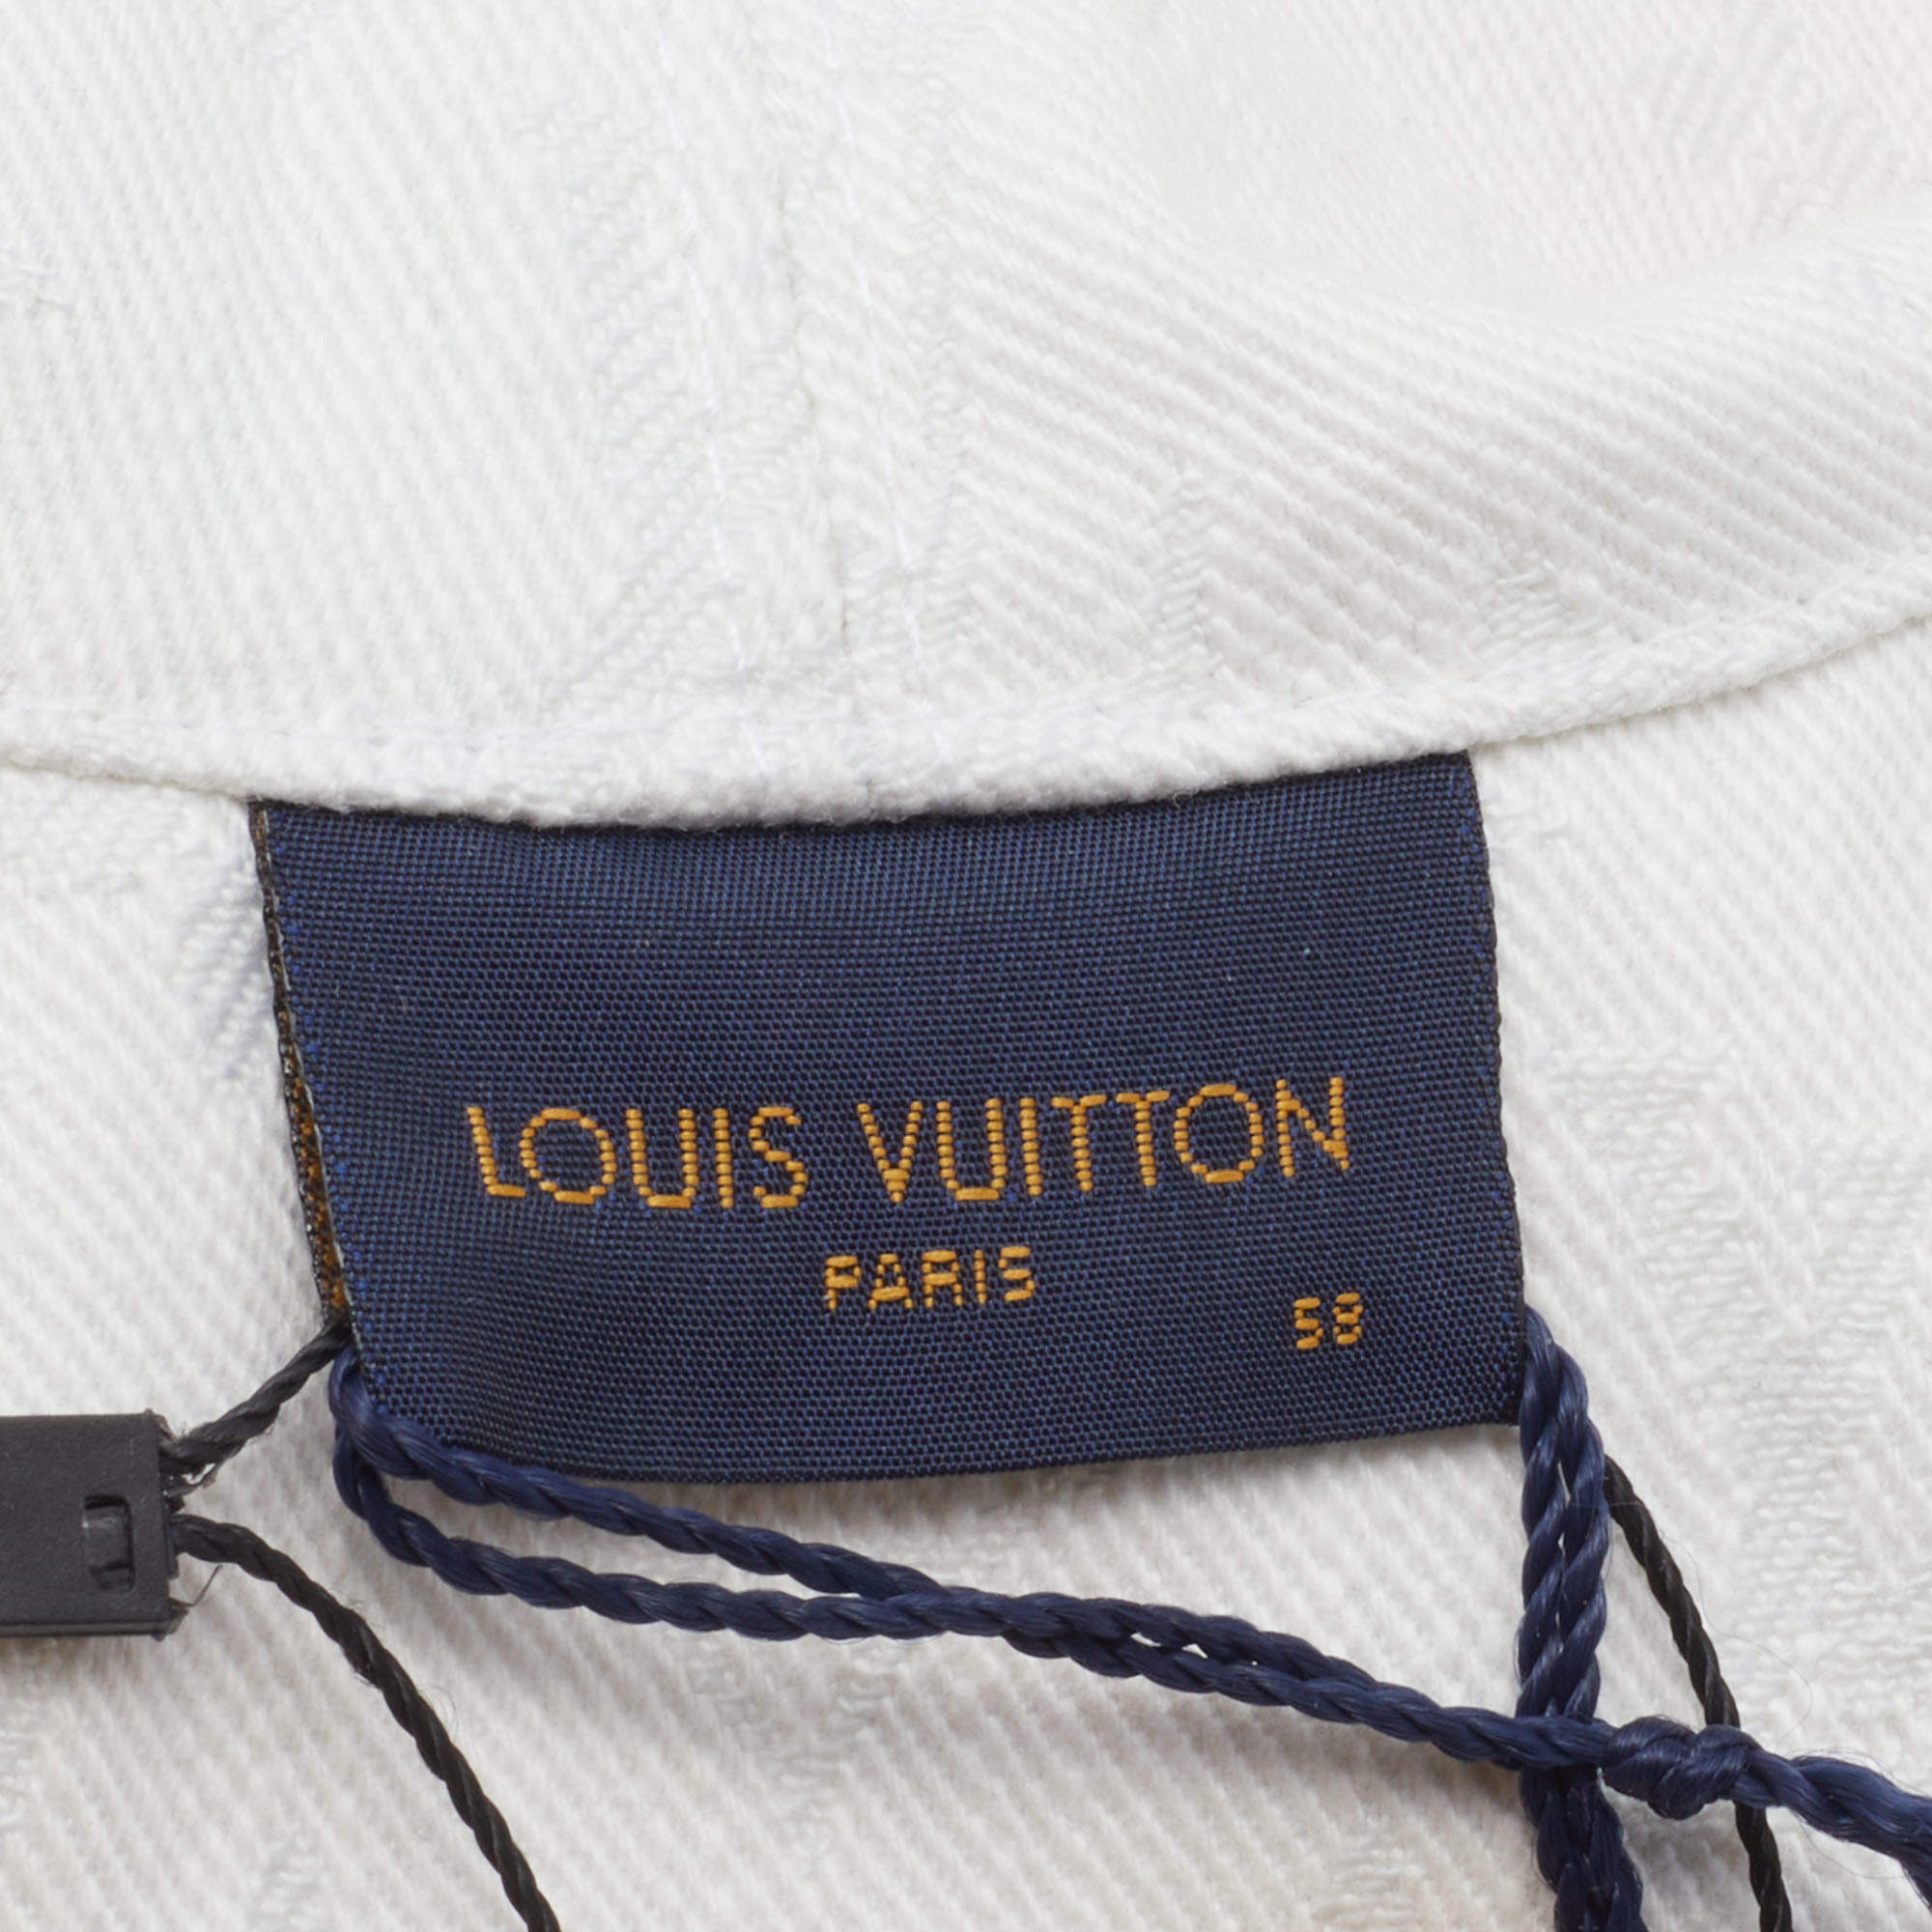 Louis Vuitton Multicolor Monogram Watercolor Cotton Reversible Bucket Hat  Size 58 Louis Vuitton | The Luxury Closet